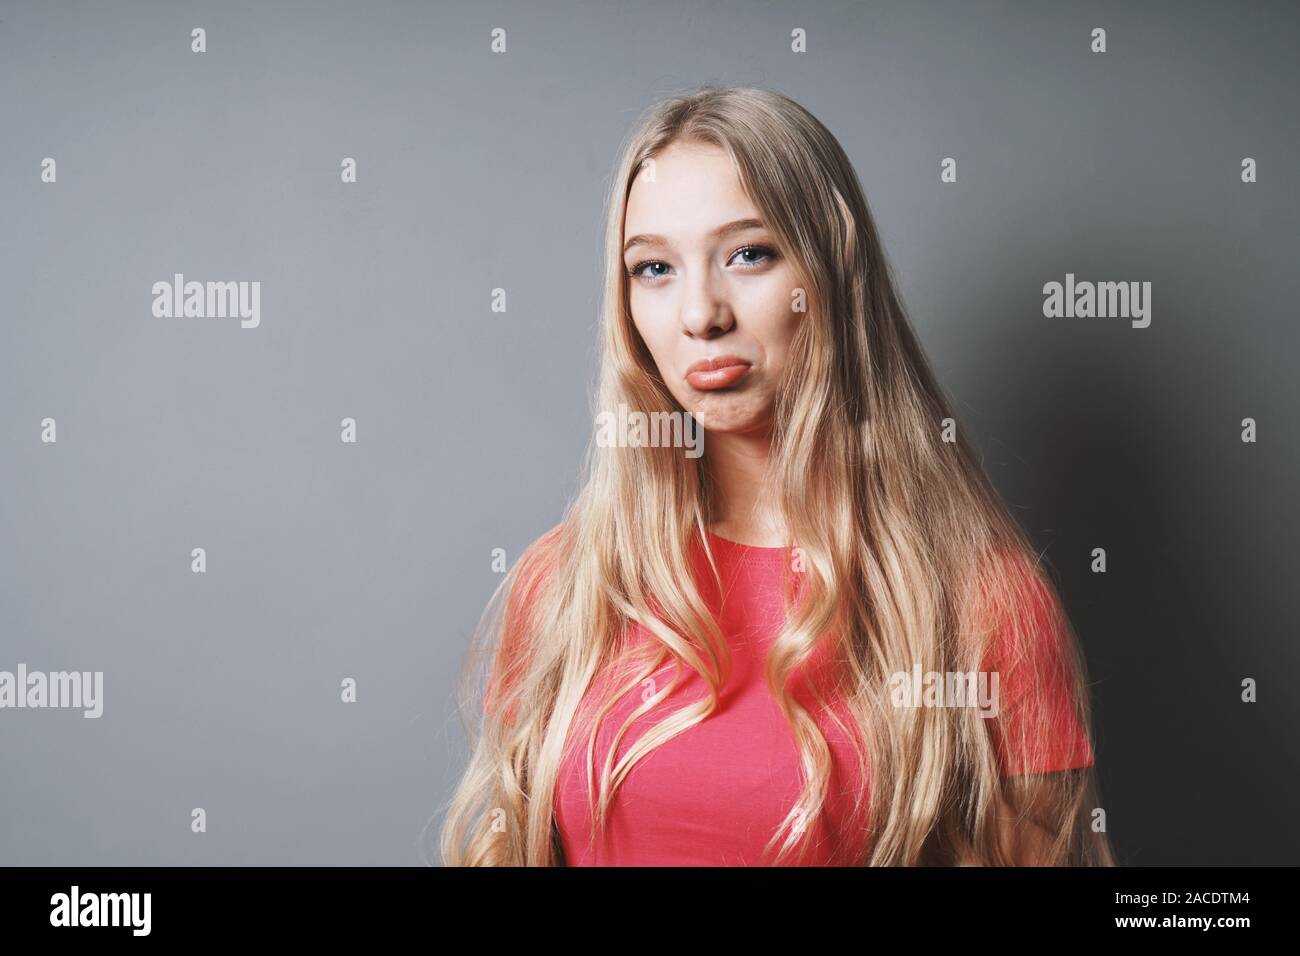 Sulky pouty Jugendmädchen ihre Lippen schürzte - adoleszenz Konzept - grauer Hintergrund mit Kopie Raum Stockfoto